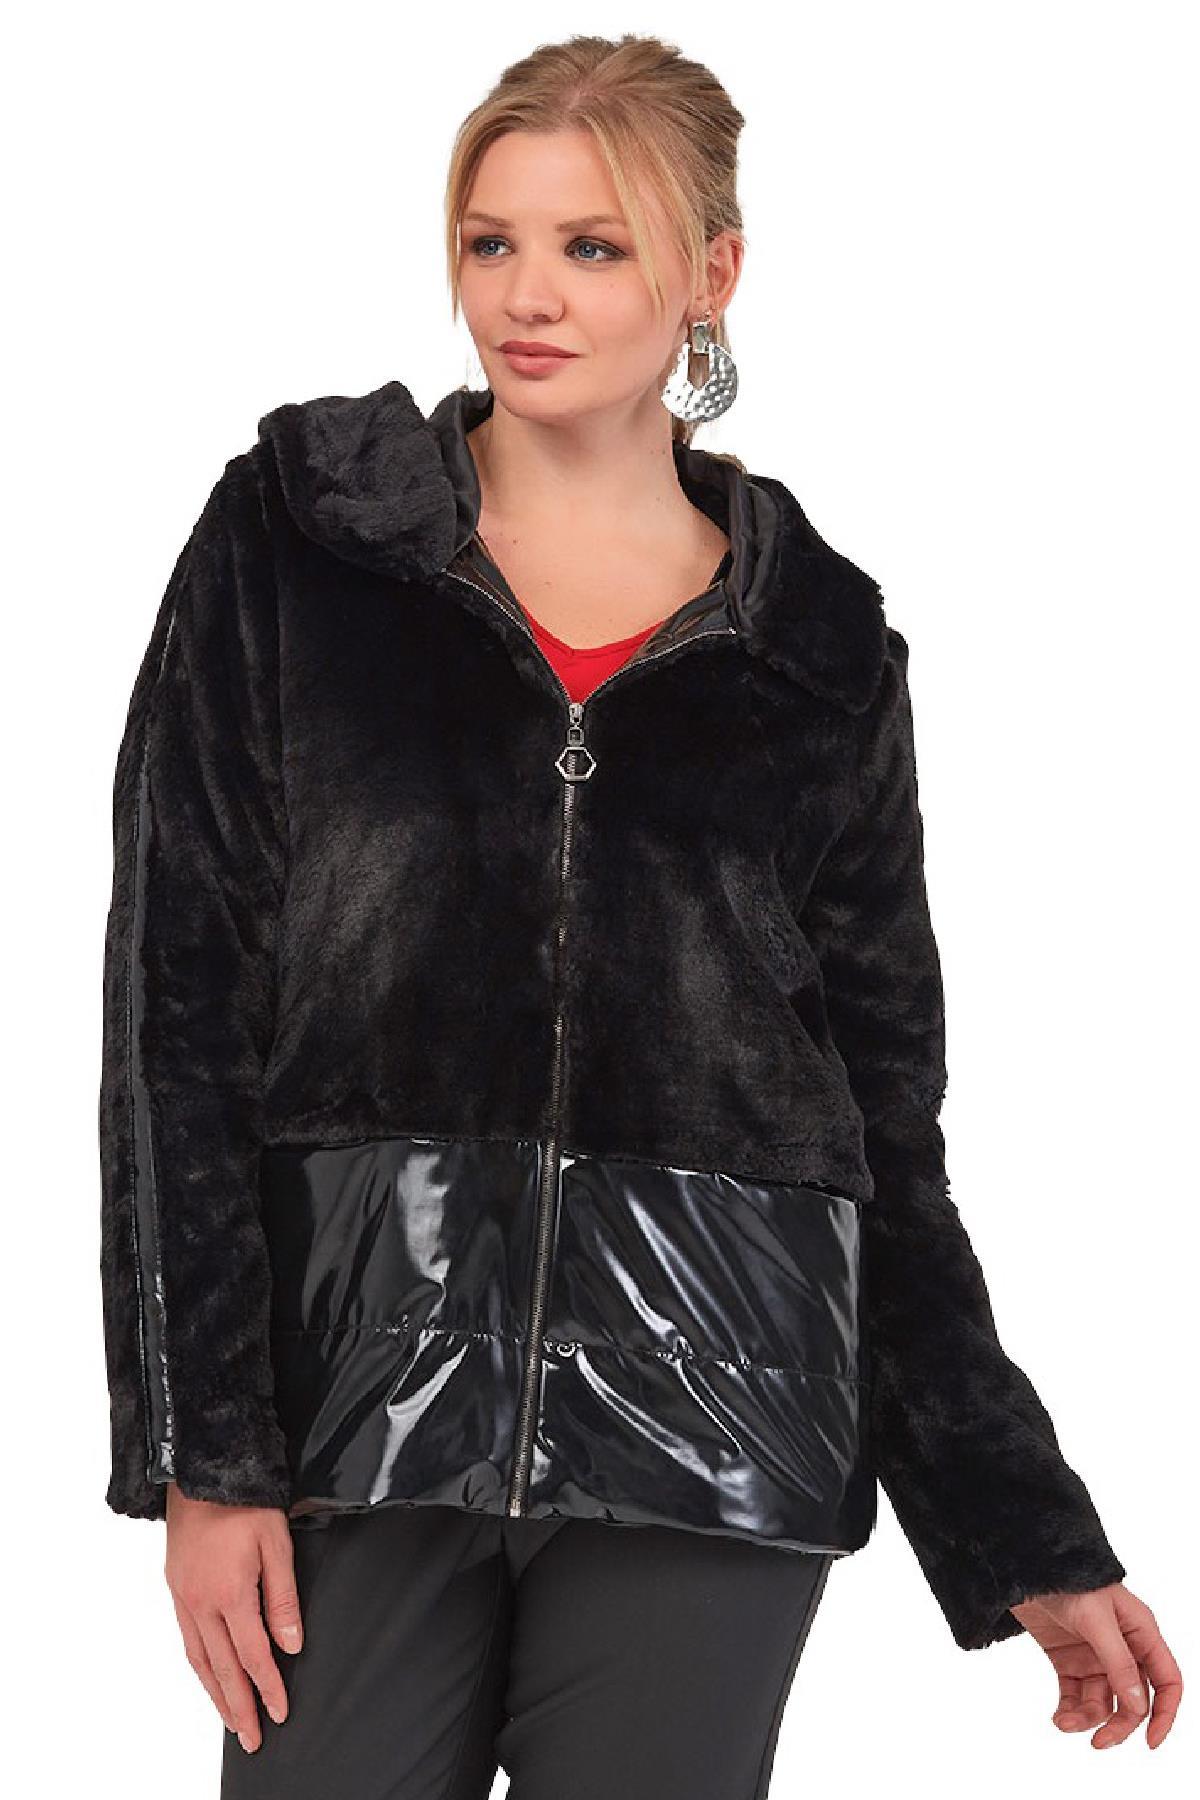 Fierte Kadın Büyük Beden Gömlek Lm43120 Uzun Kol Siyah Büyük Beden Giyim